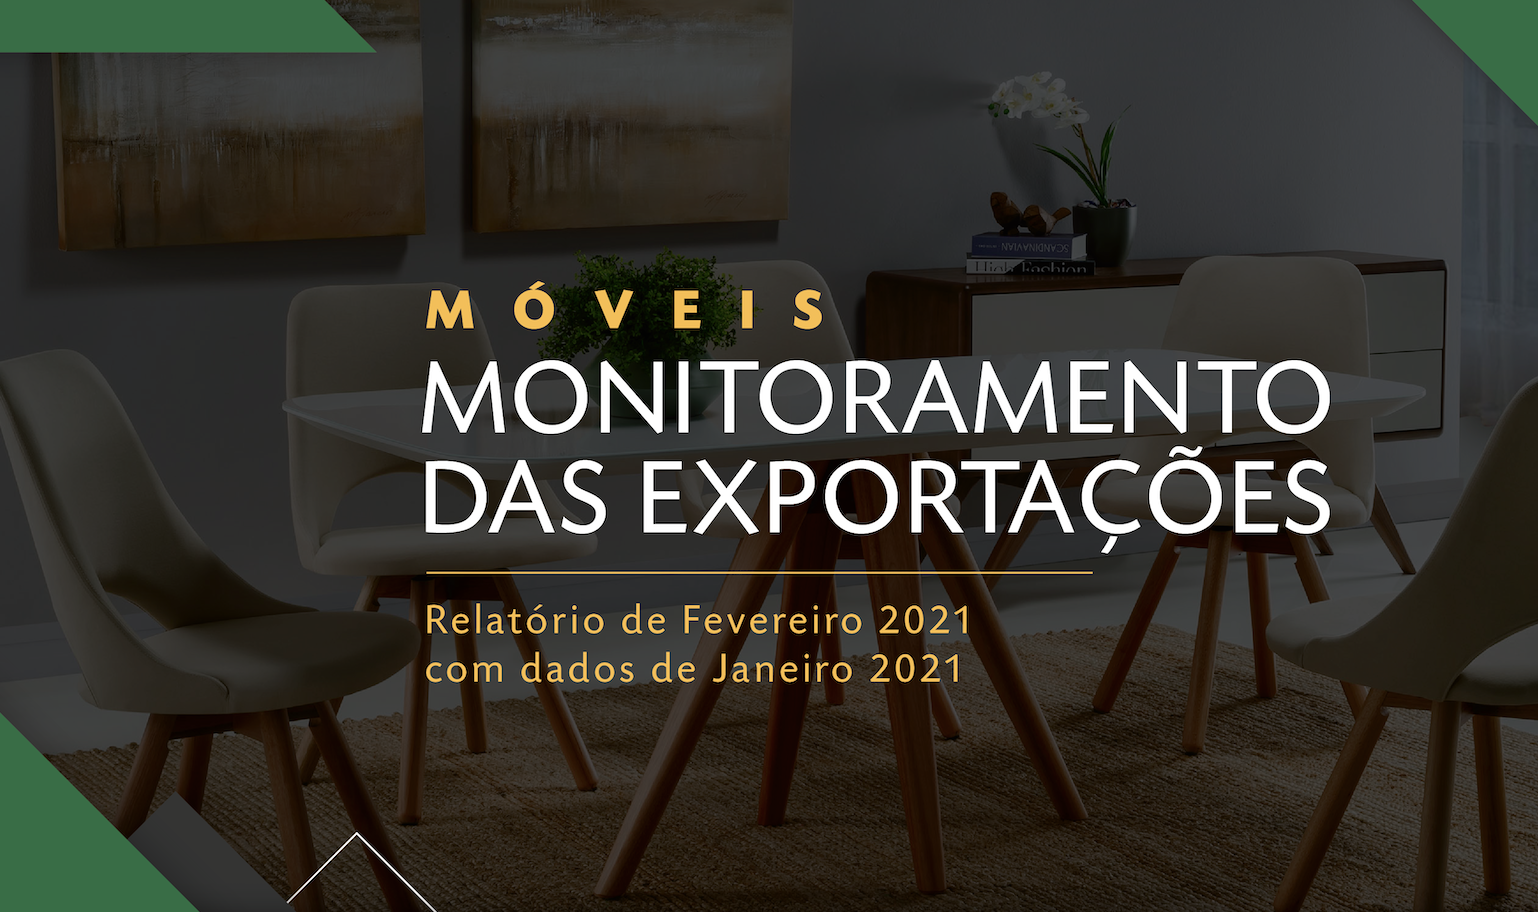 Monitoramento das Exportações: Venda de móveis brasileiros para os Estados Unidos cresce quase 90% em dois anos